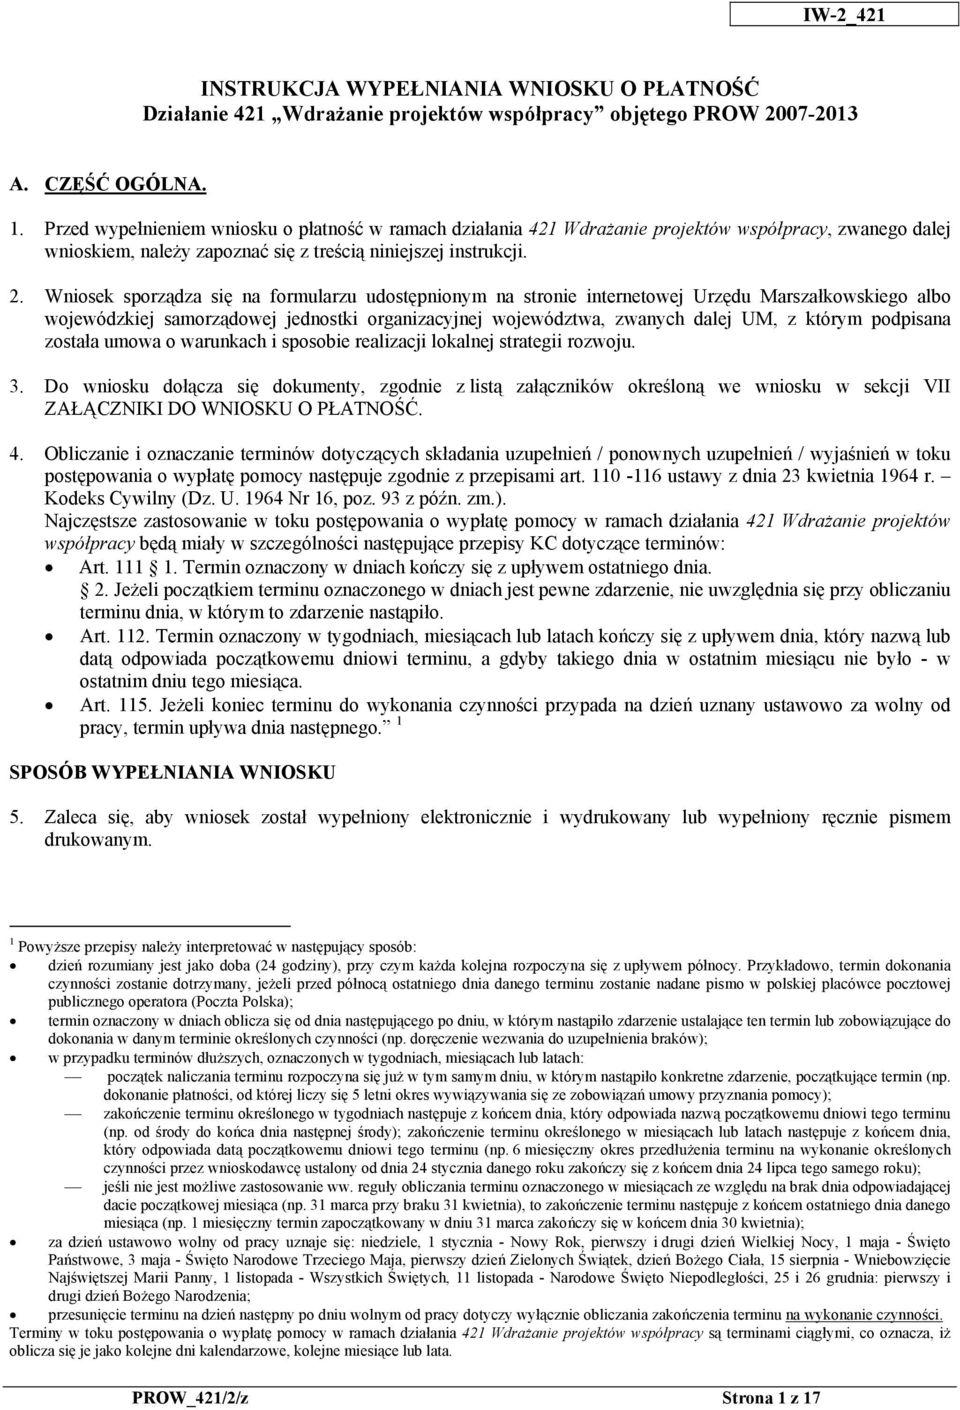 Wniosek sporządza się na formularzu udostępnionym na stronie internetowej Urzędu Marszałkowskiego albo wojewódzkiej samorządowej jednostki organizacyjnej województwa, zwanych dalej UM, z którym